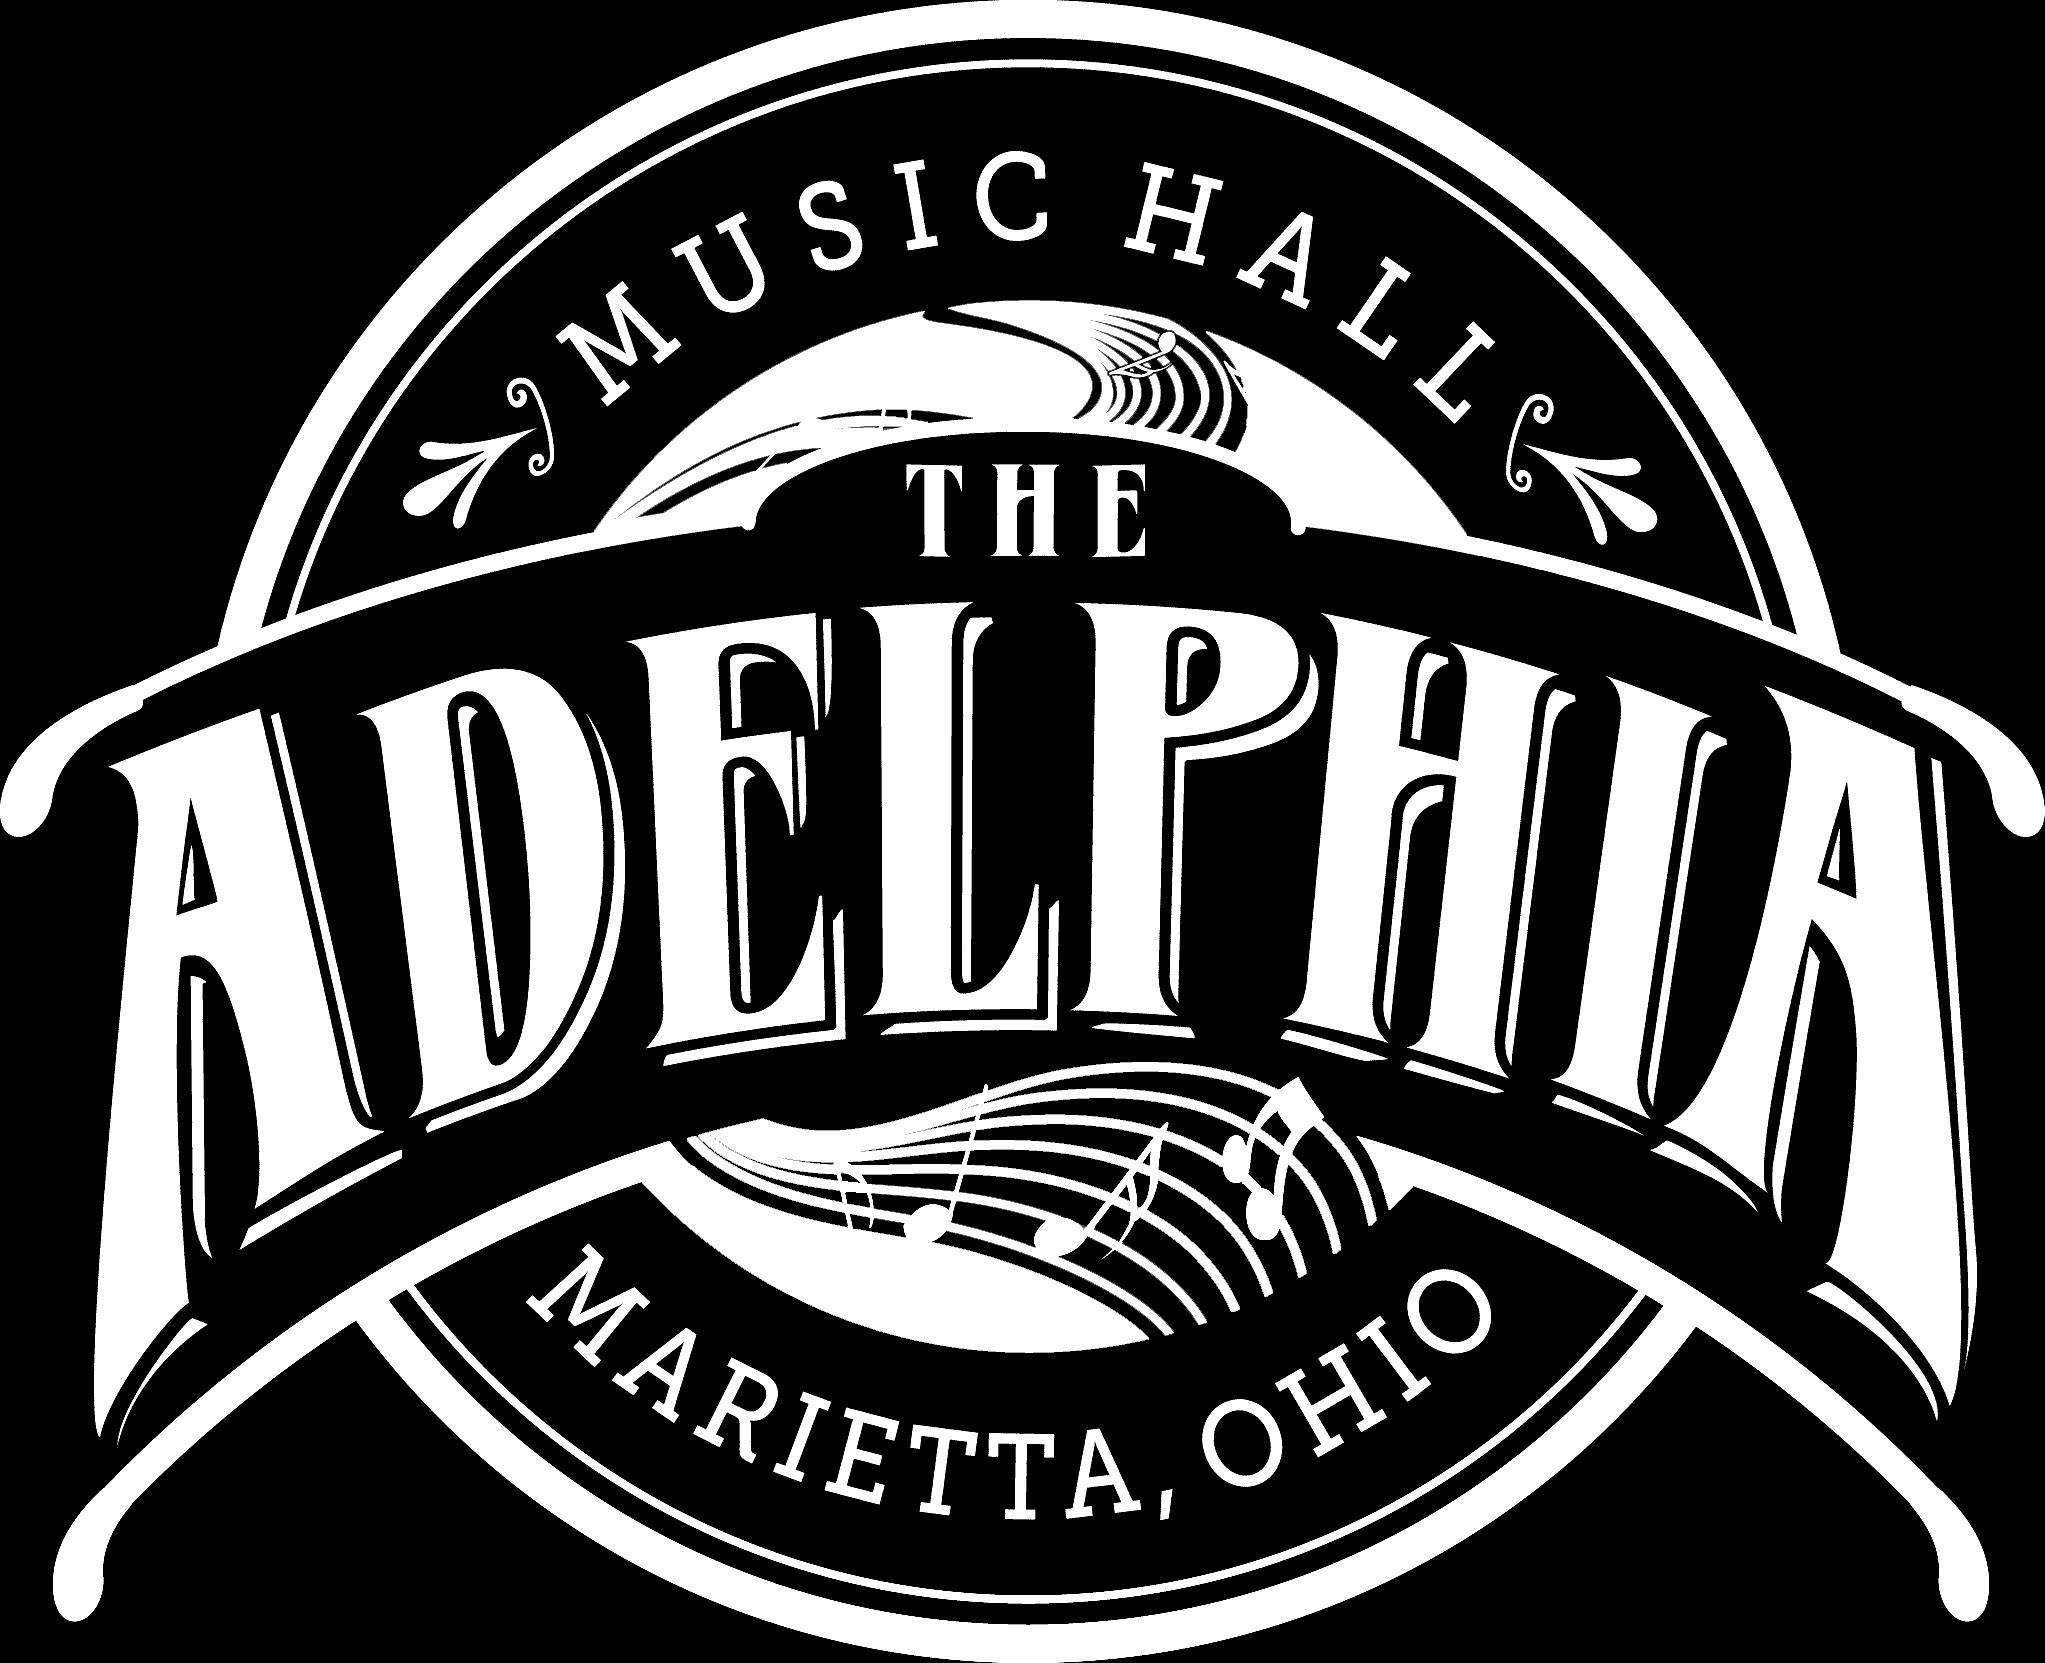 Adelphia Logo - The Hopewell. The Galley, The Adelphia Music Hall & The Hackett Hotel